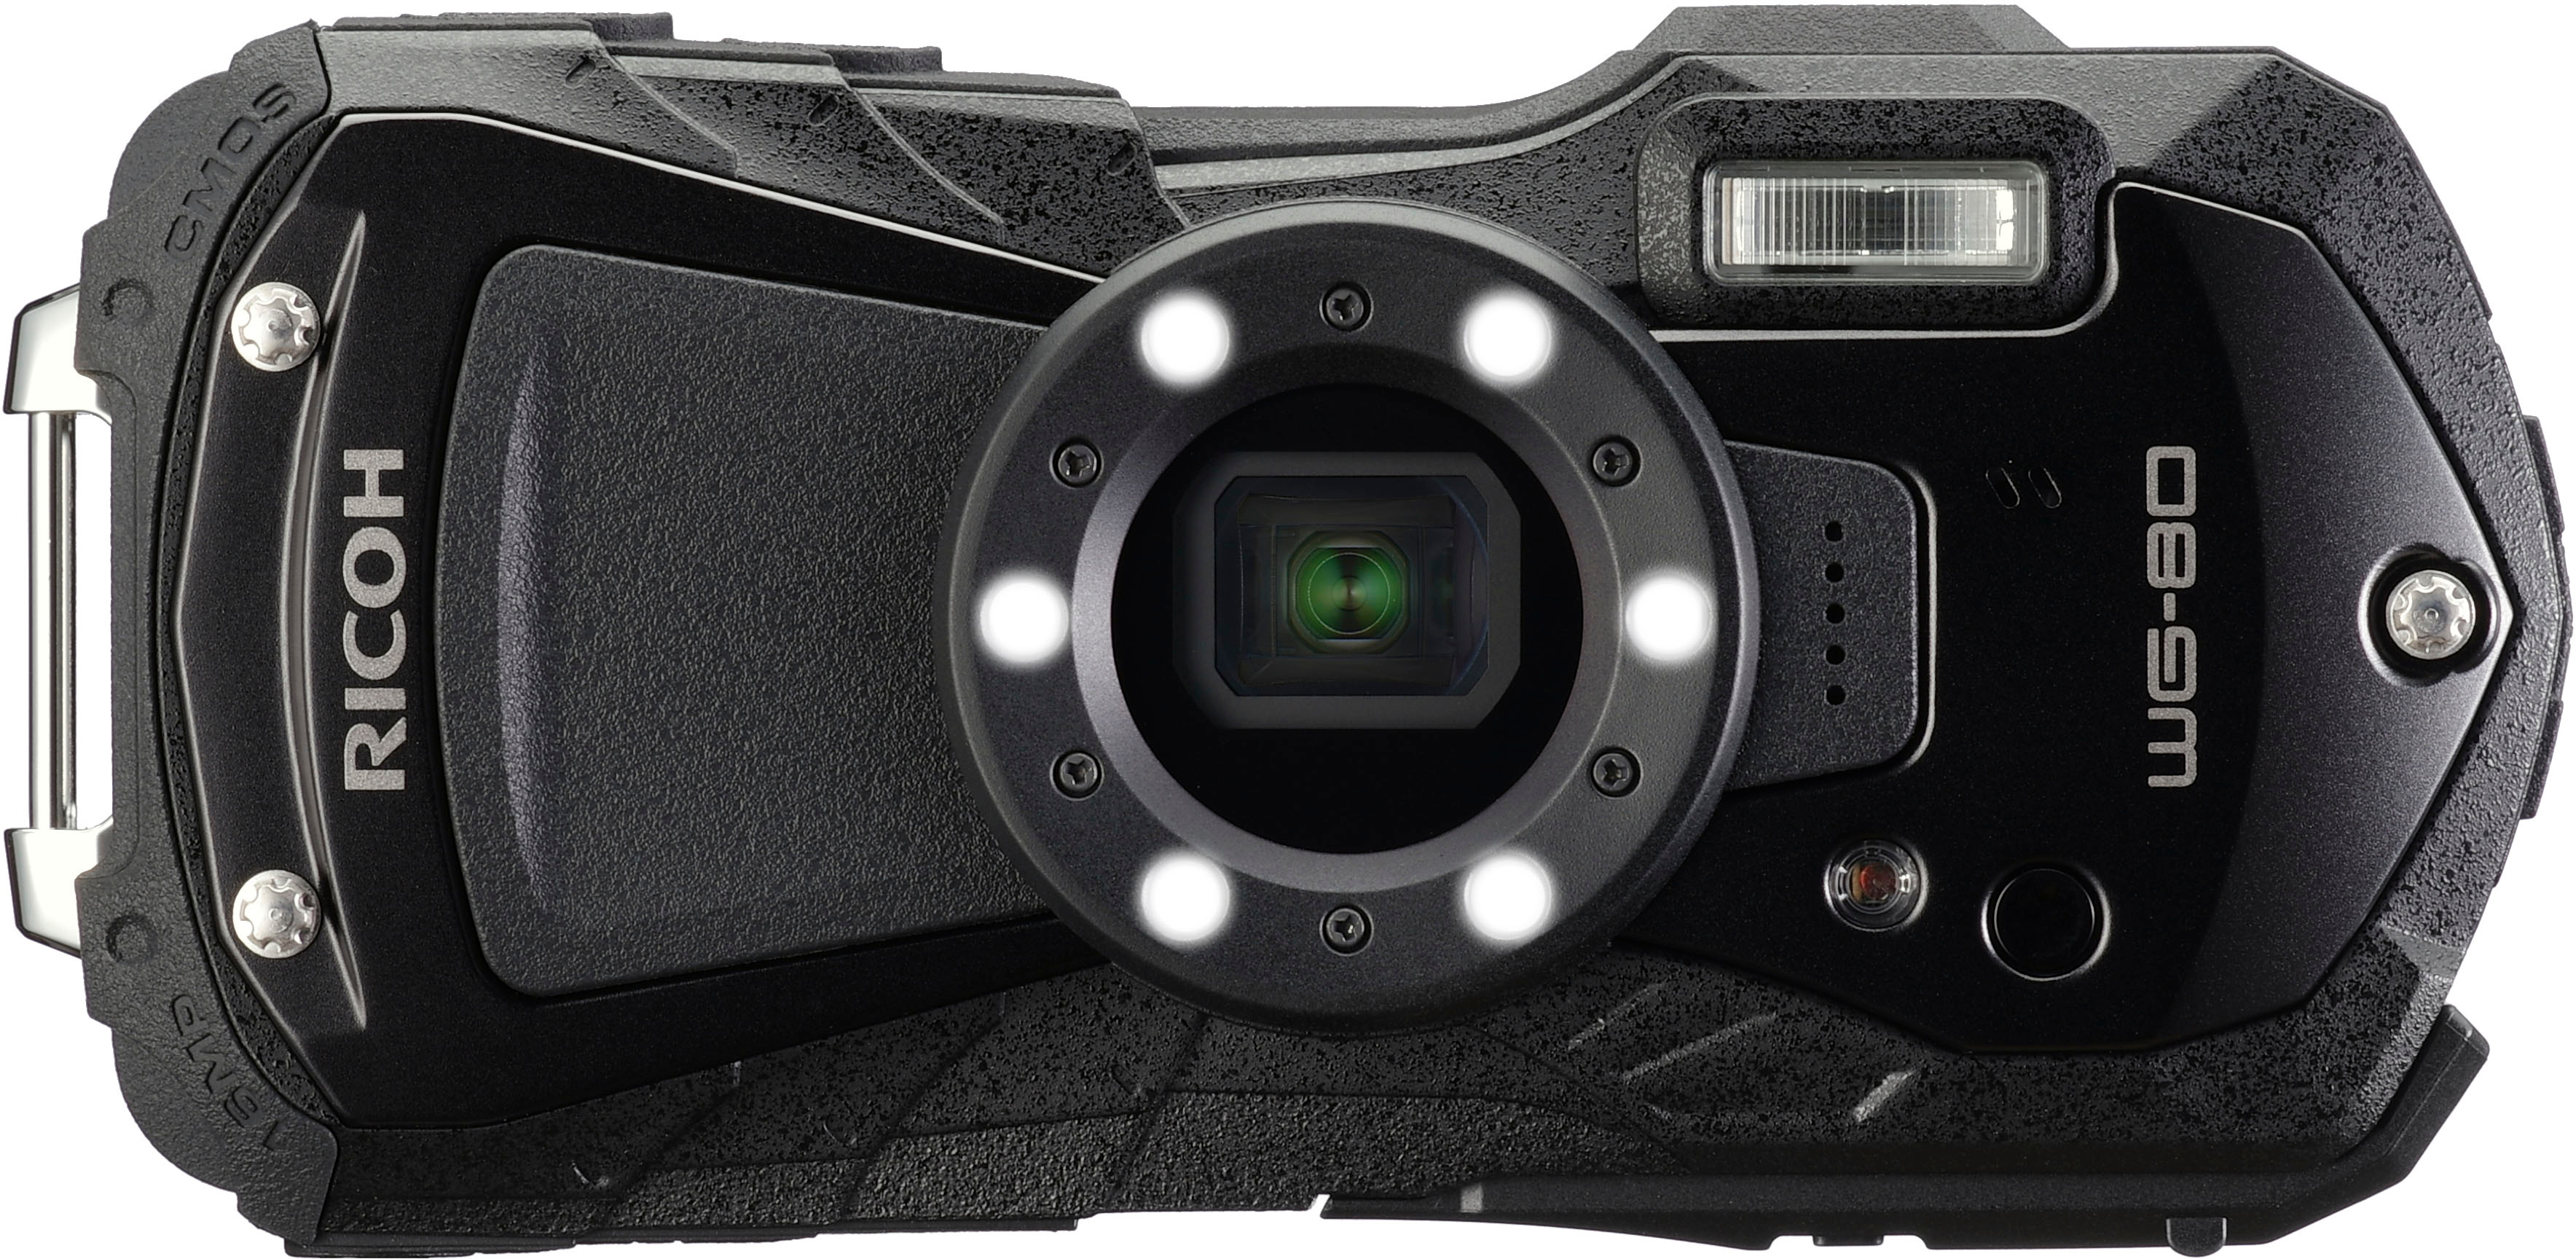 Ricoh WG-80 16.0 Megapixel Waterproof Digital Camera Black 03123 - Best Buy